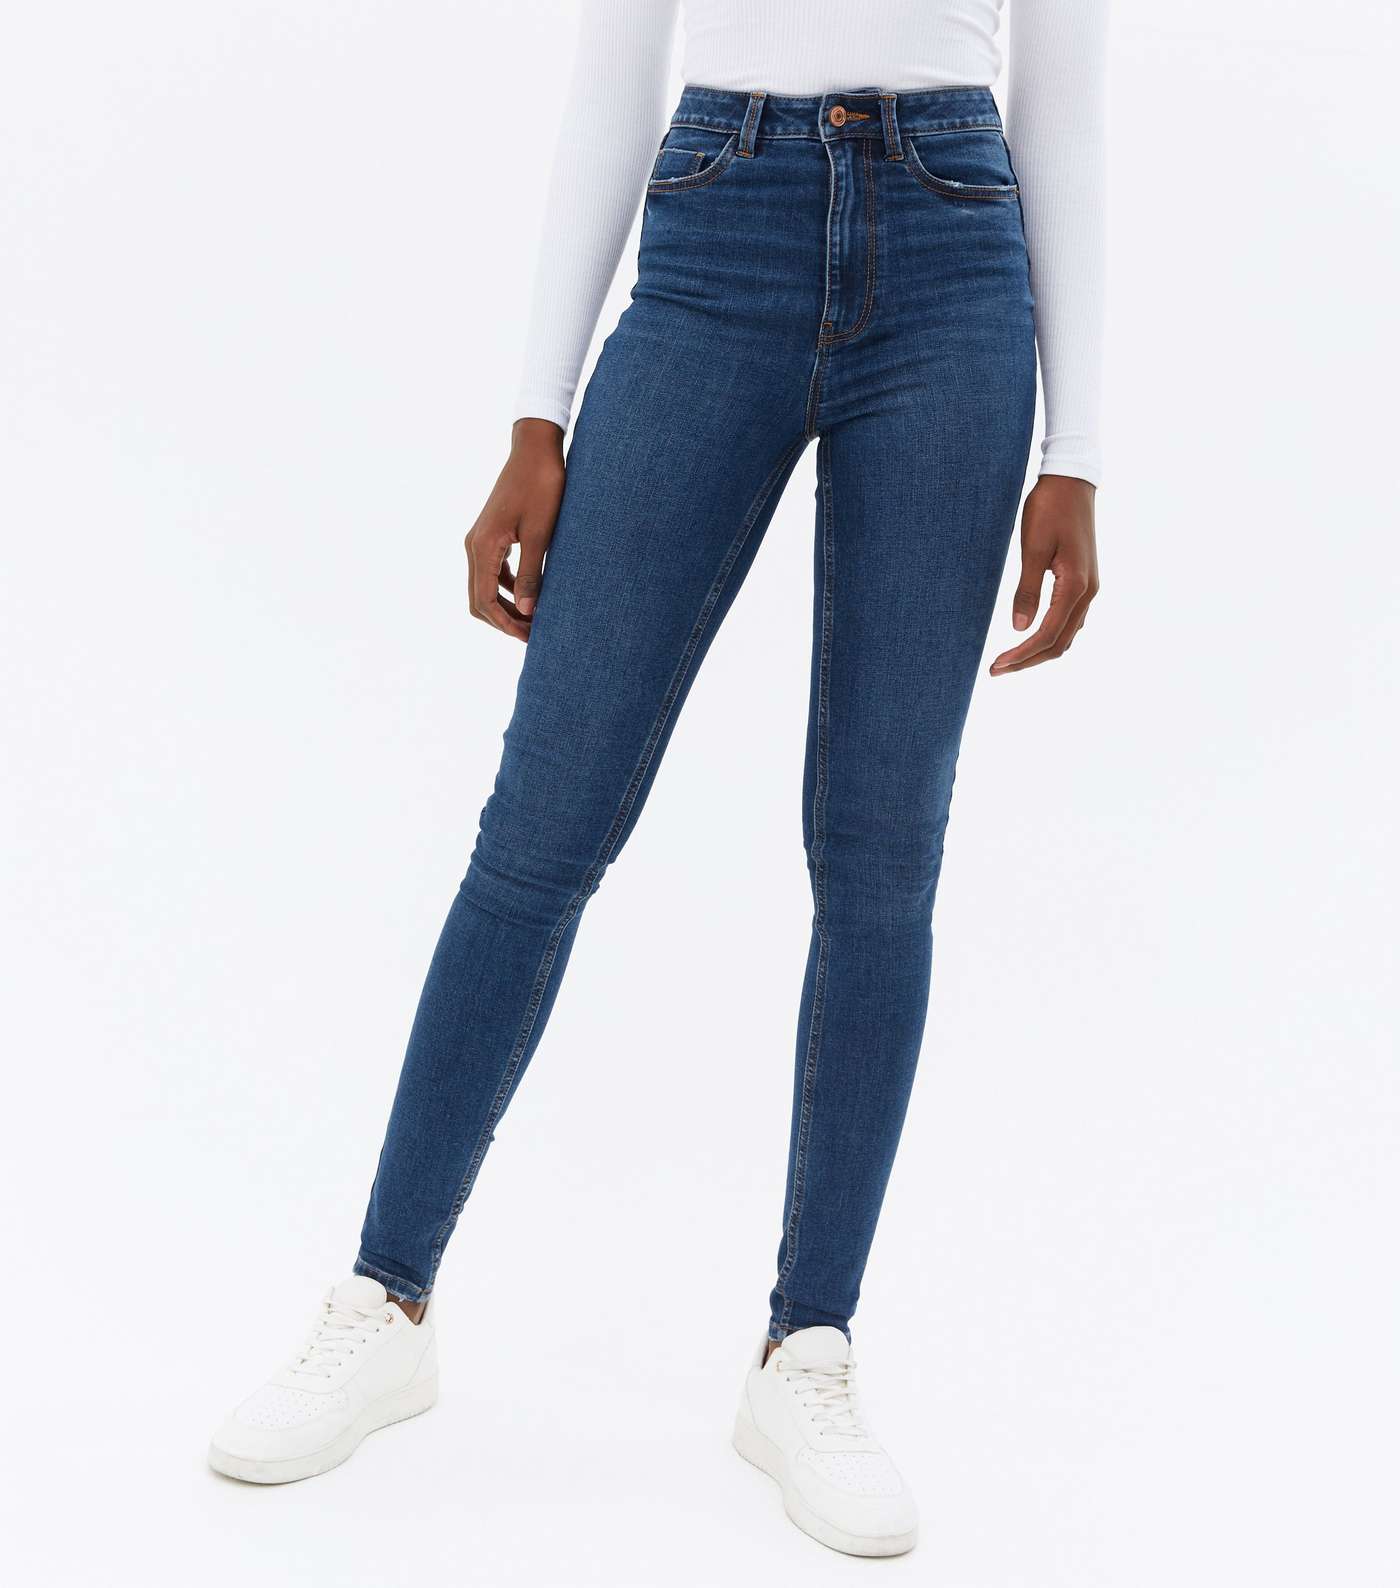 Tall Teal Lift & Shape Jenna Skinny Jeans Image 2